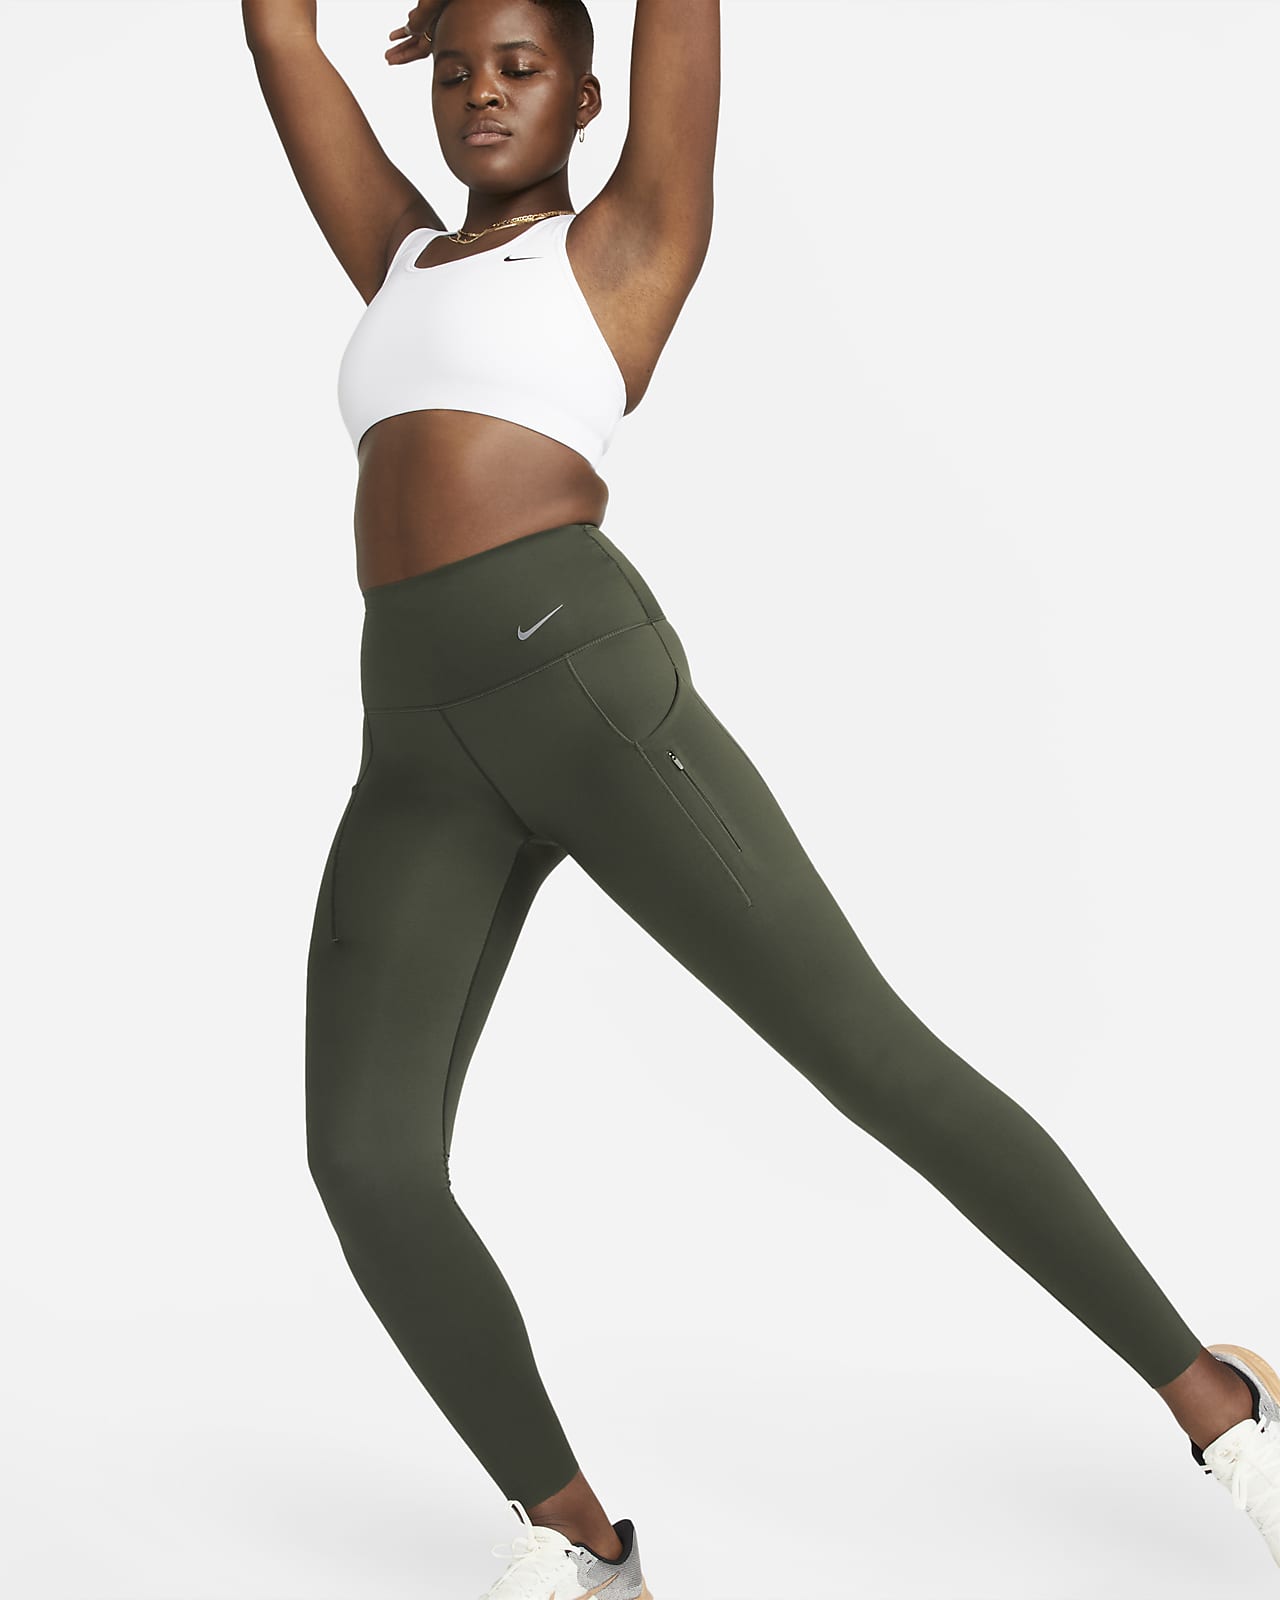 Γυναικείο ψηλόμεσο κολάν σε κανονικό μήκος με σταθερή στήριξη και τσέπες Nike Go